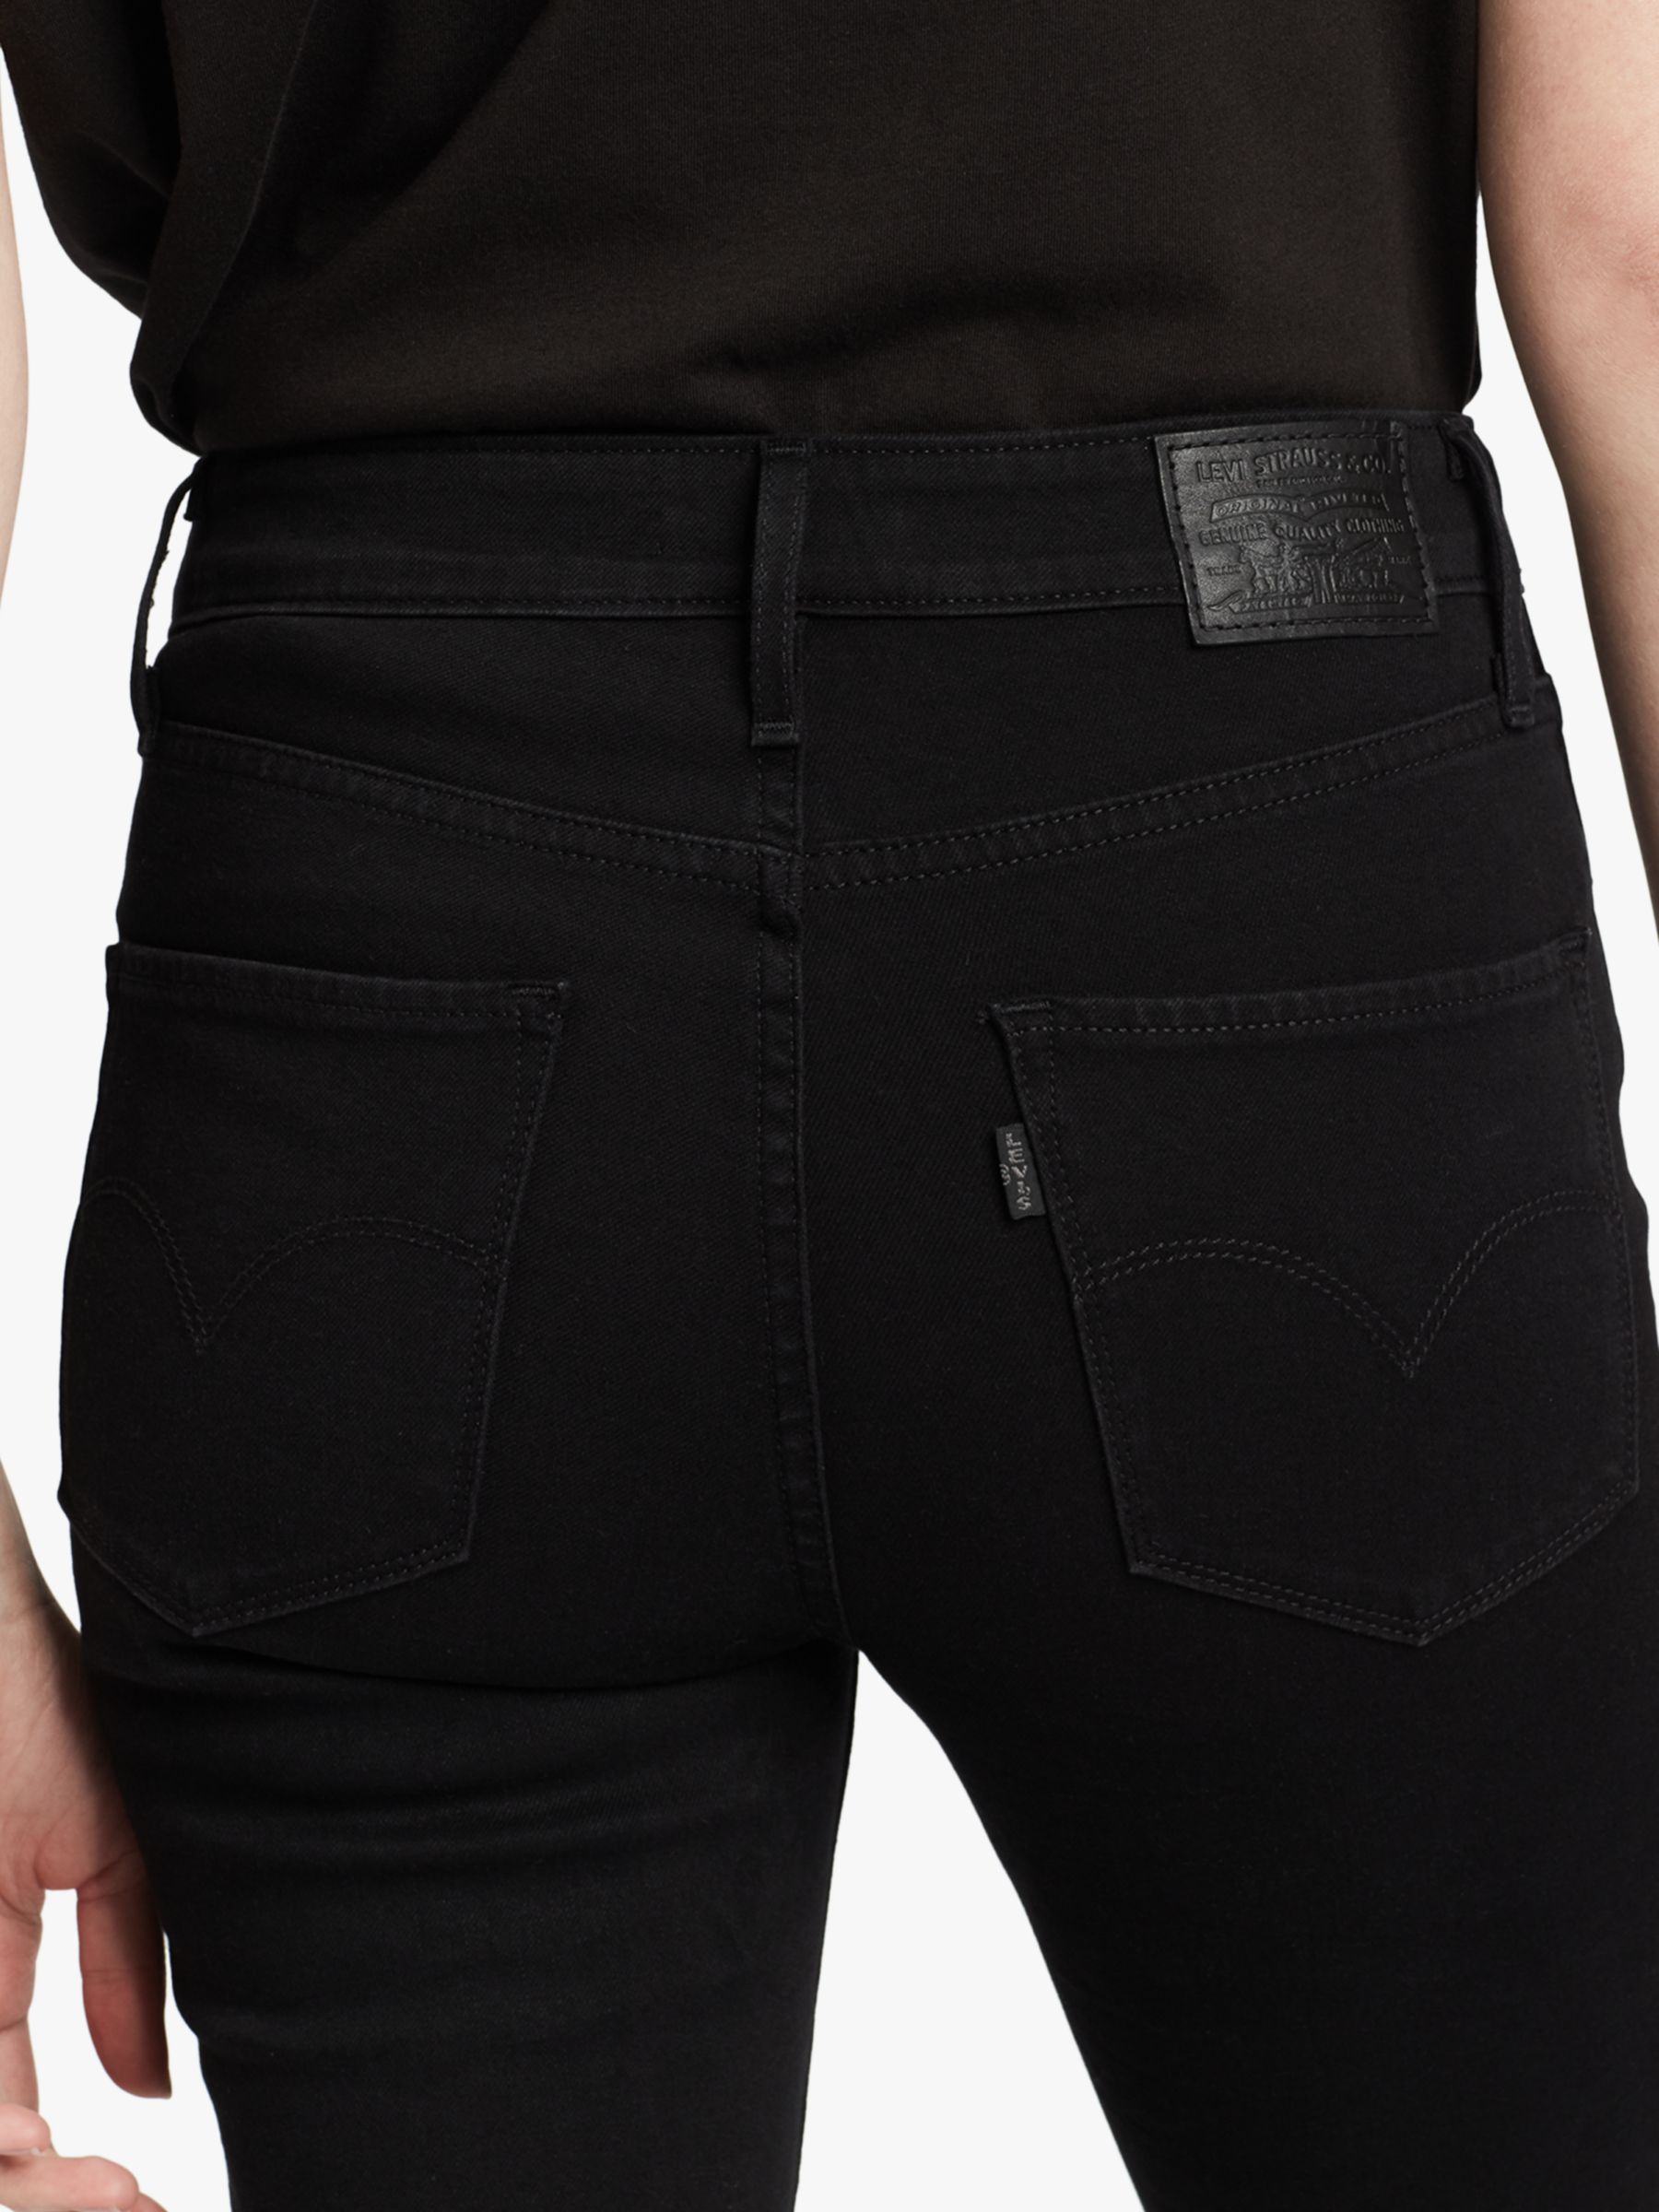 Actualizar 63+ imagen levi’s black jeans women’s